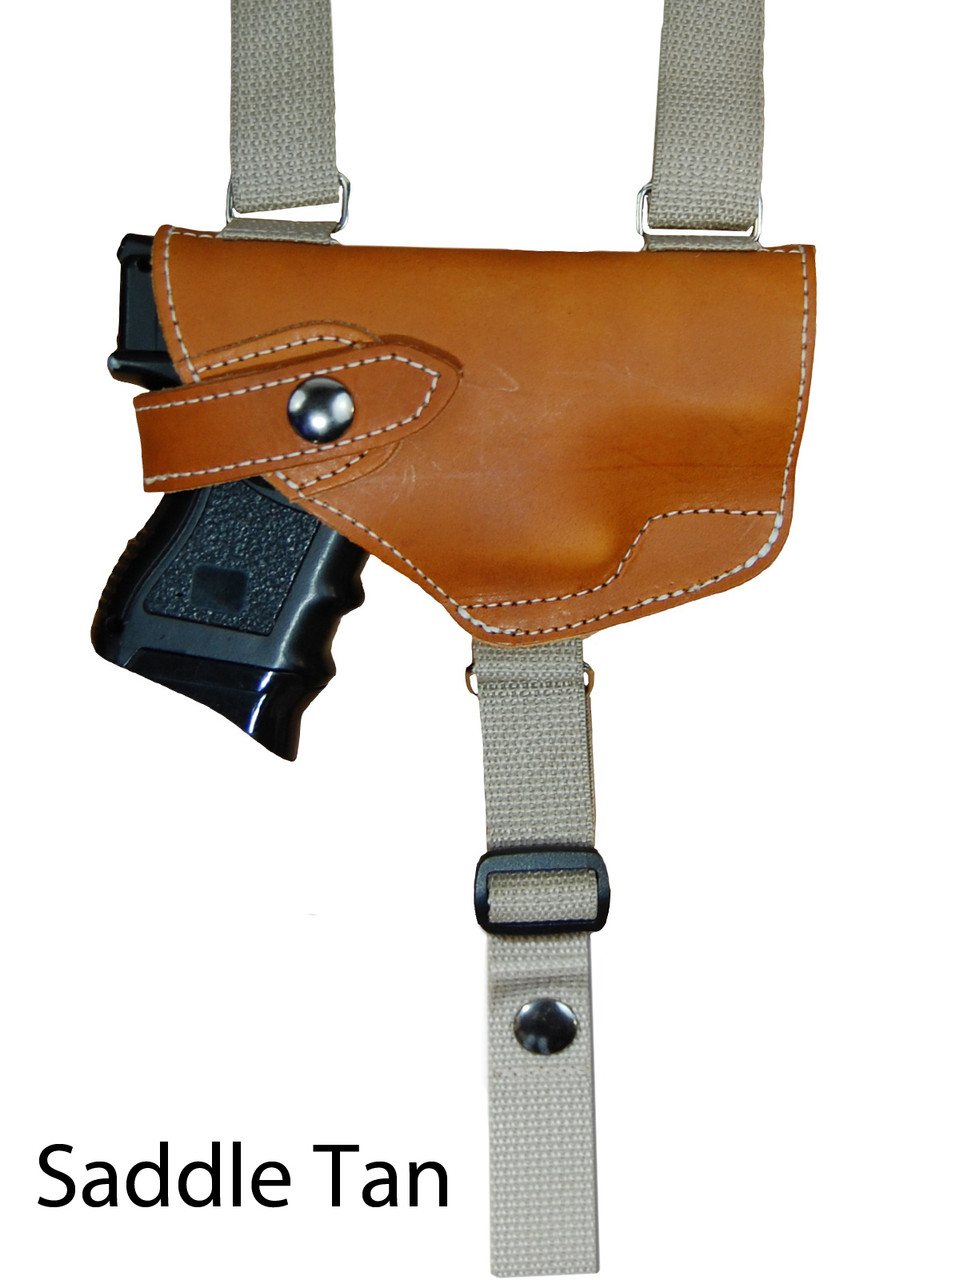 saddle tan leather shoulder holster